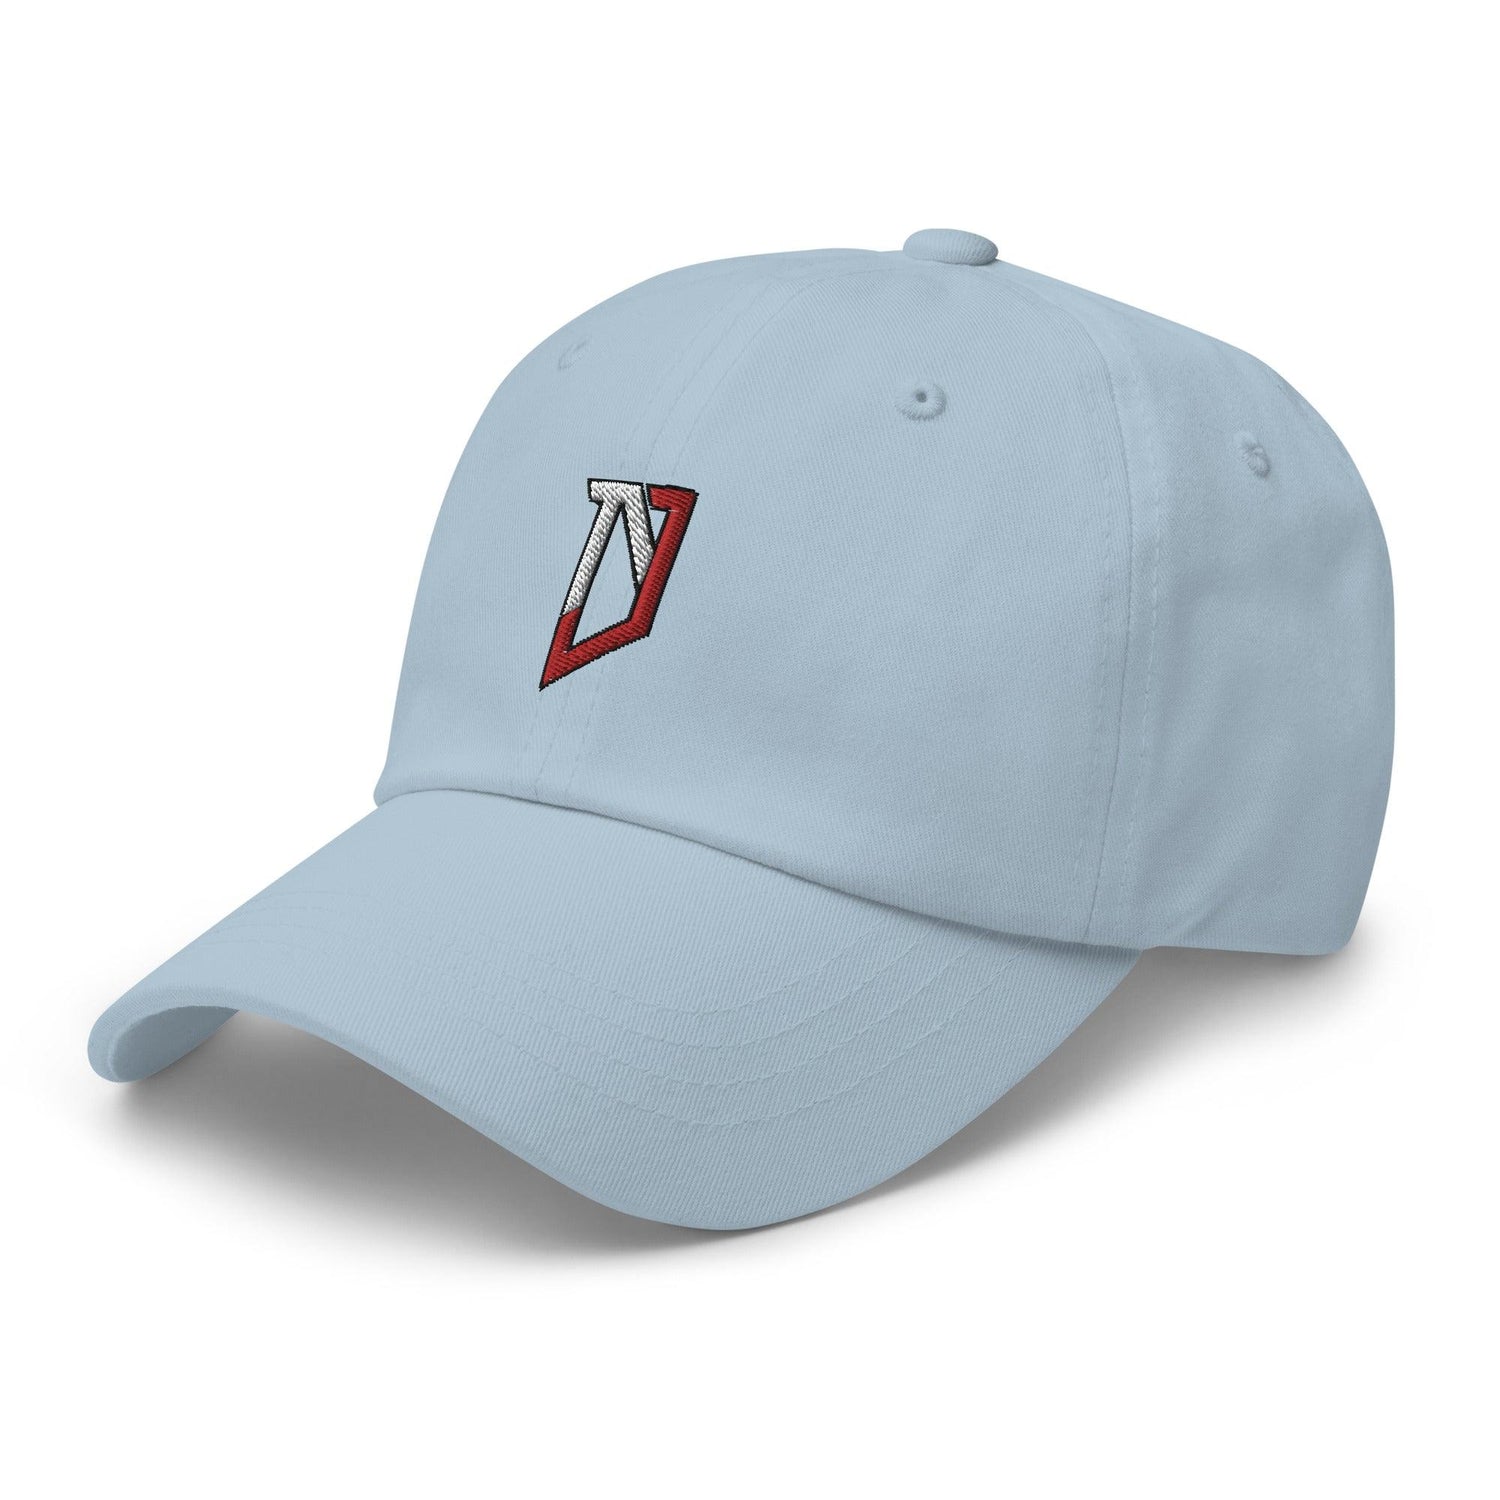 Nic Jones "NJ" hat - Fan Arch